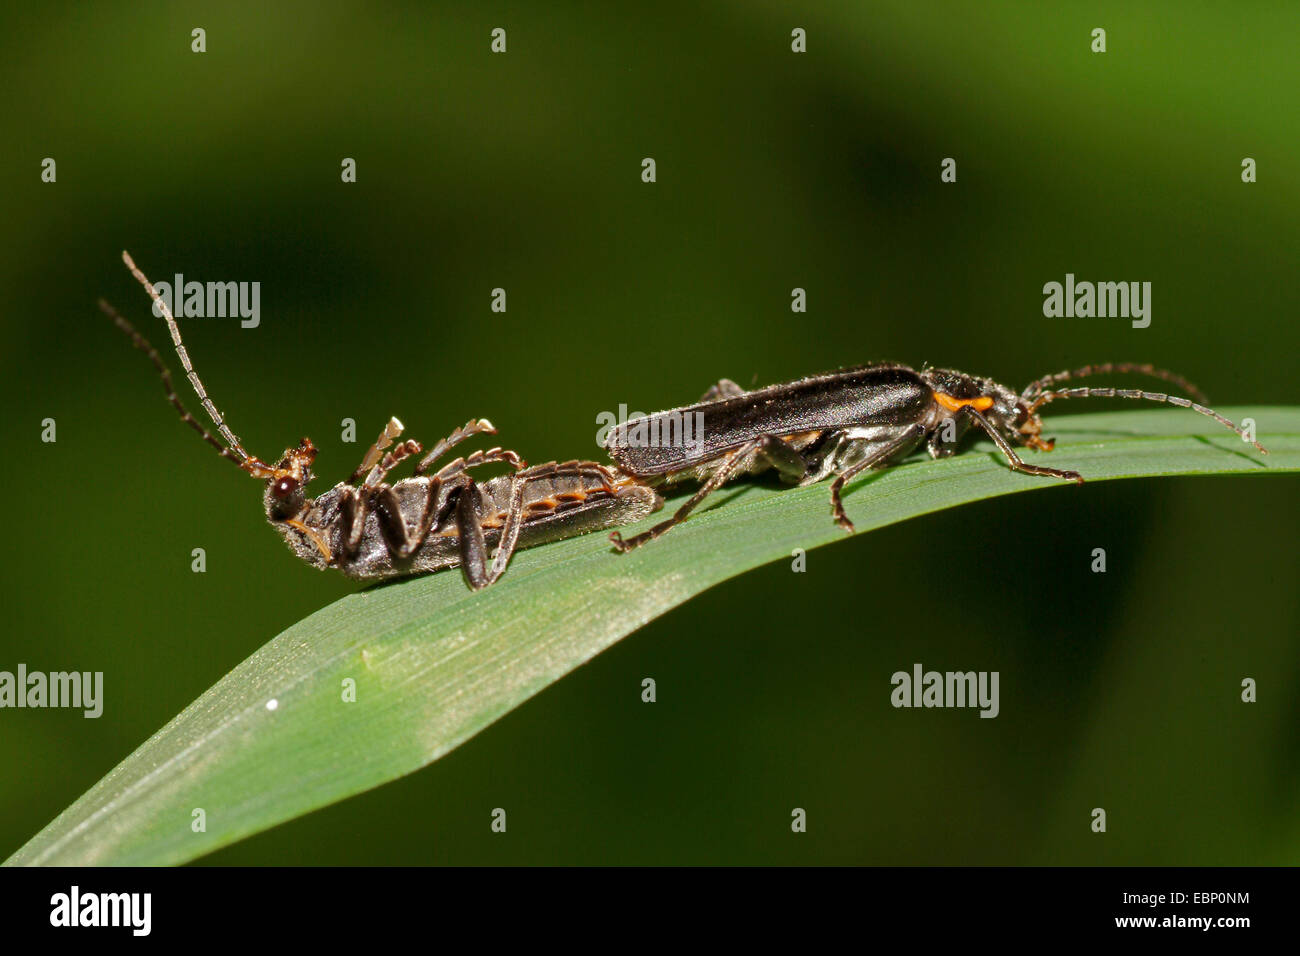 Soldado (escarabajo Cantharis obscura), dos escarabajos soldado, uno de ellos está acostado sobre su espalda, Alemania Foto de stock